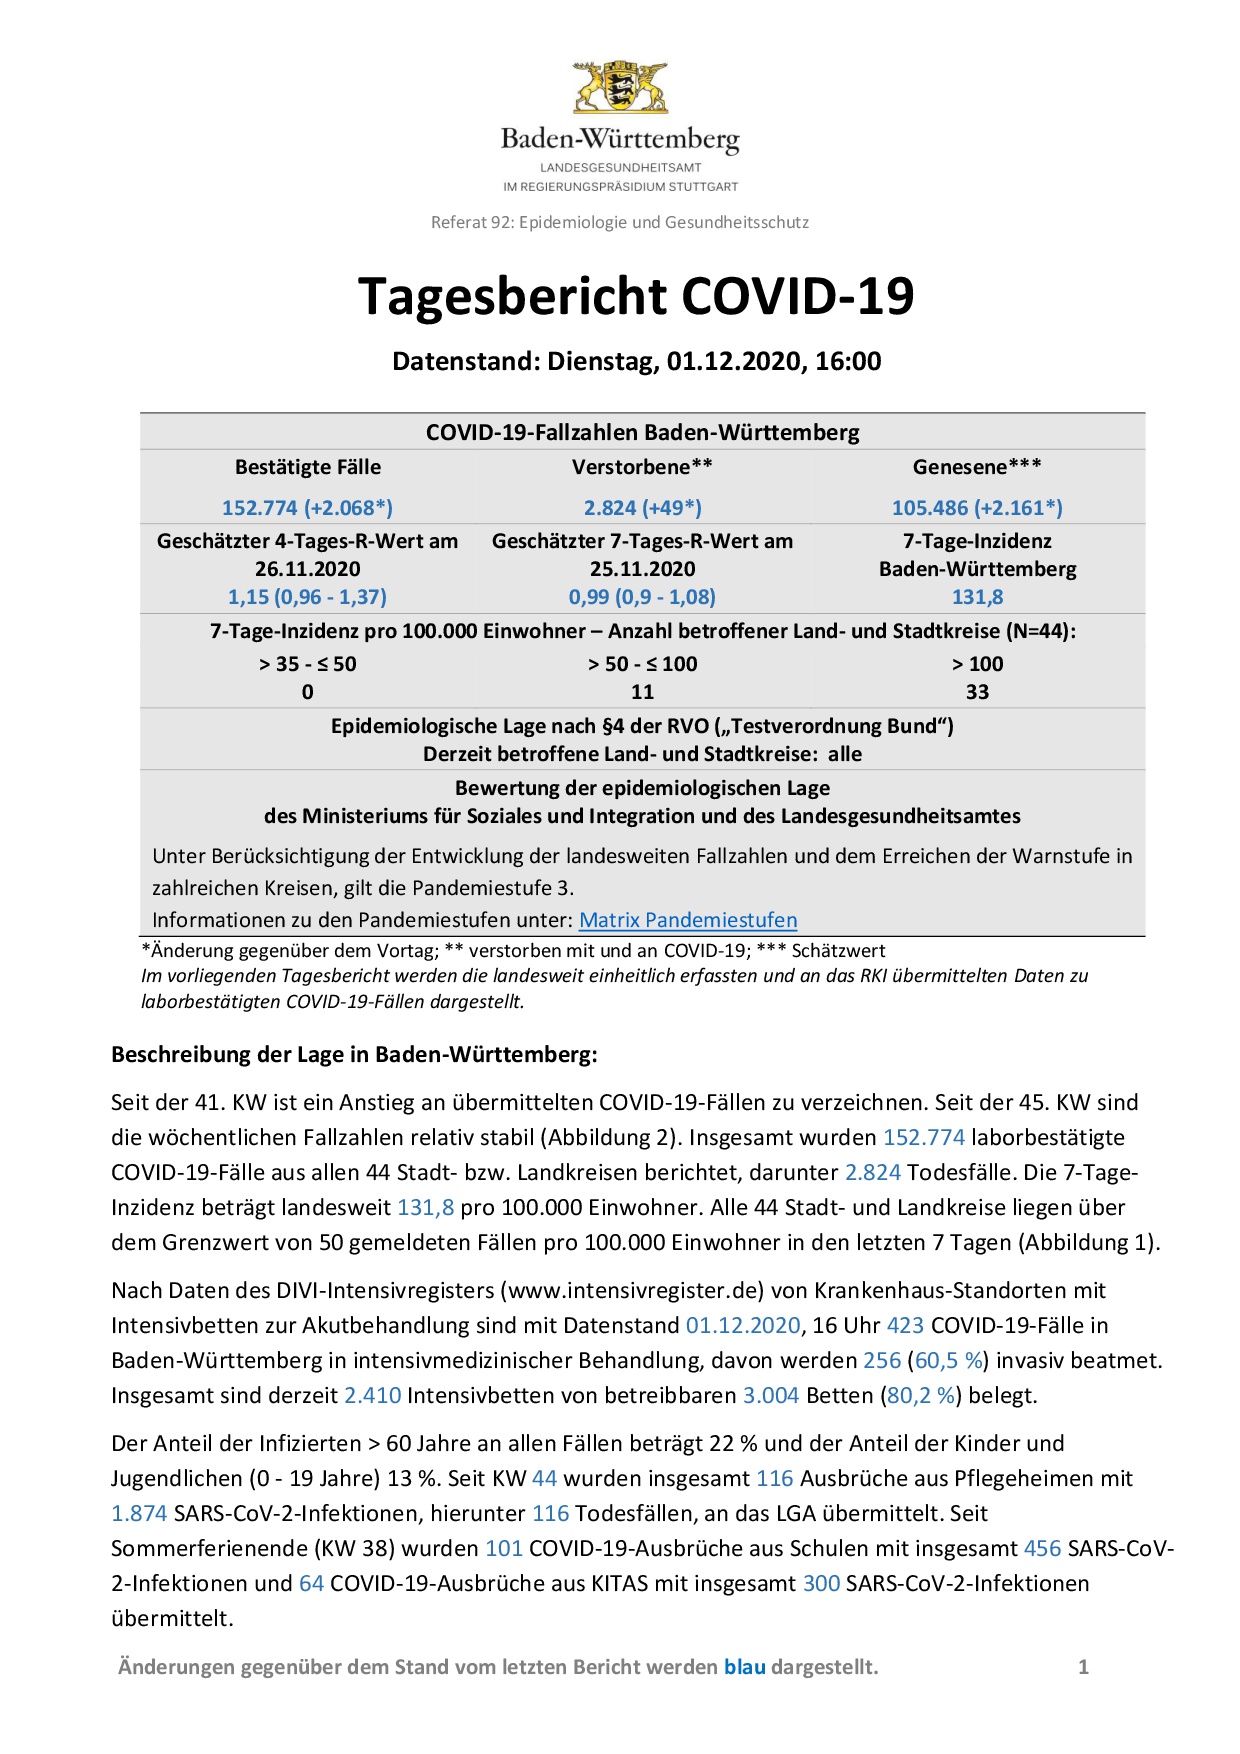 COVID-19 Tagesbericht (01.12.2020) des Landesgesundheitsamts Baden-Württemberg – (ausführlicher)